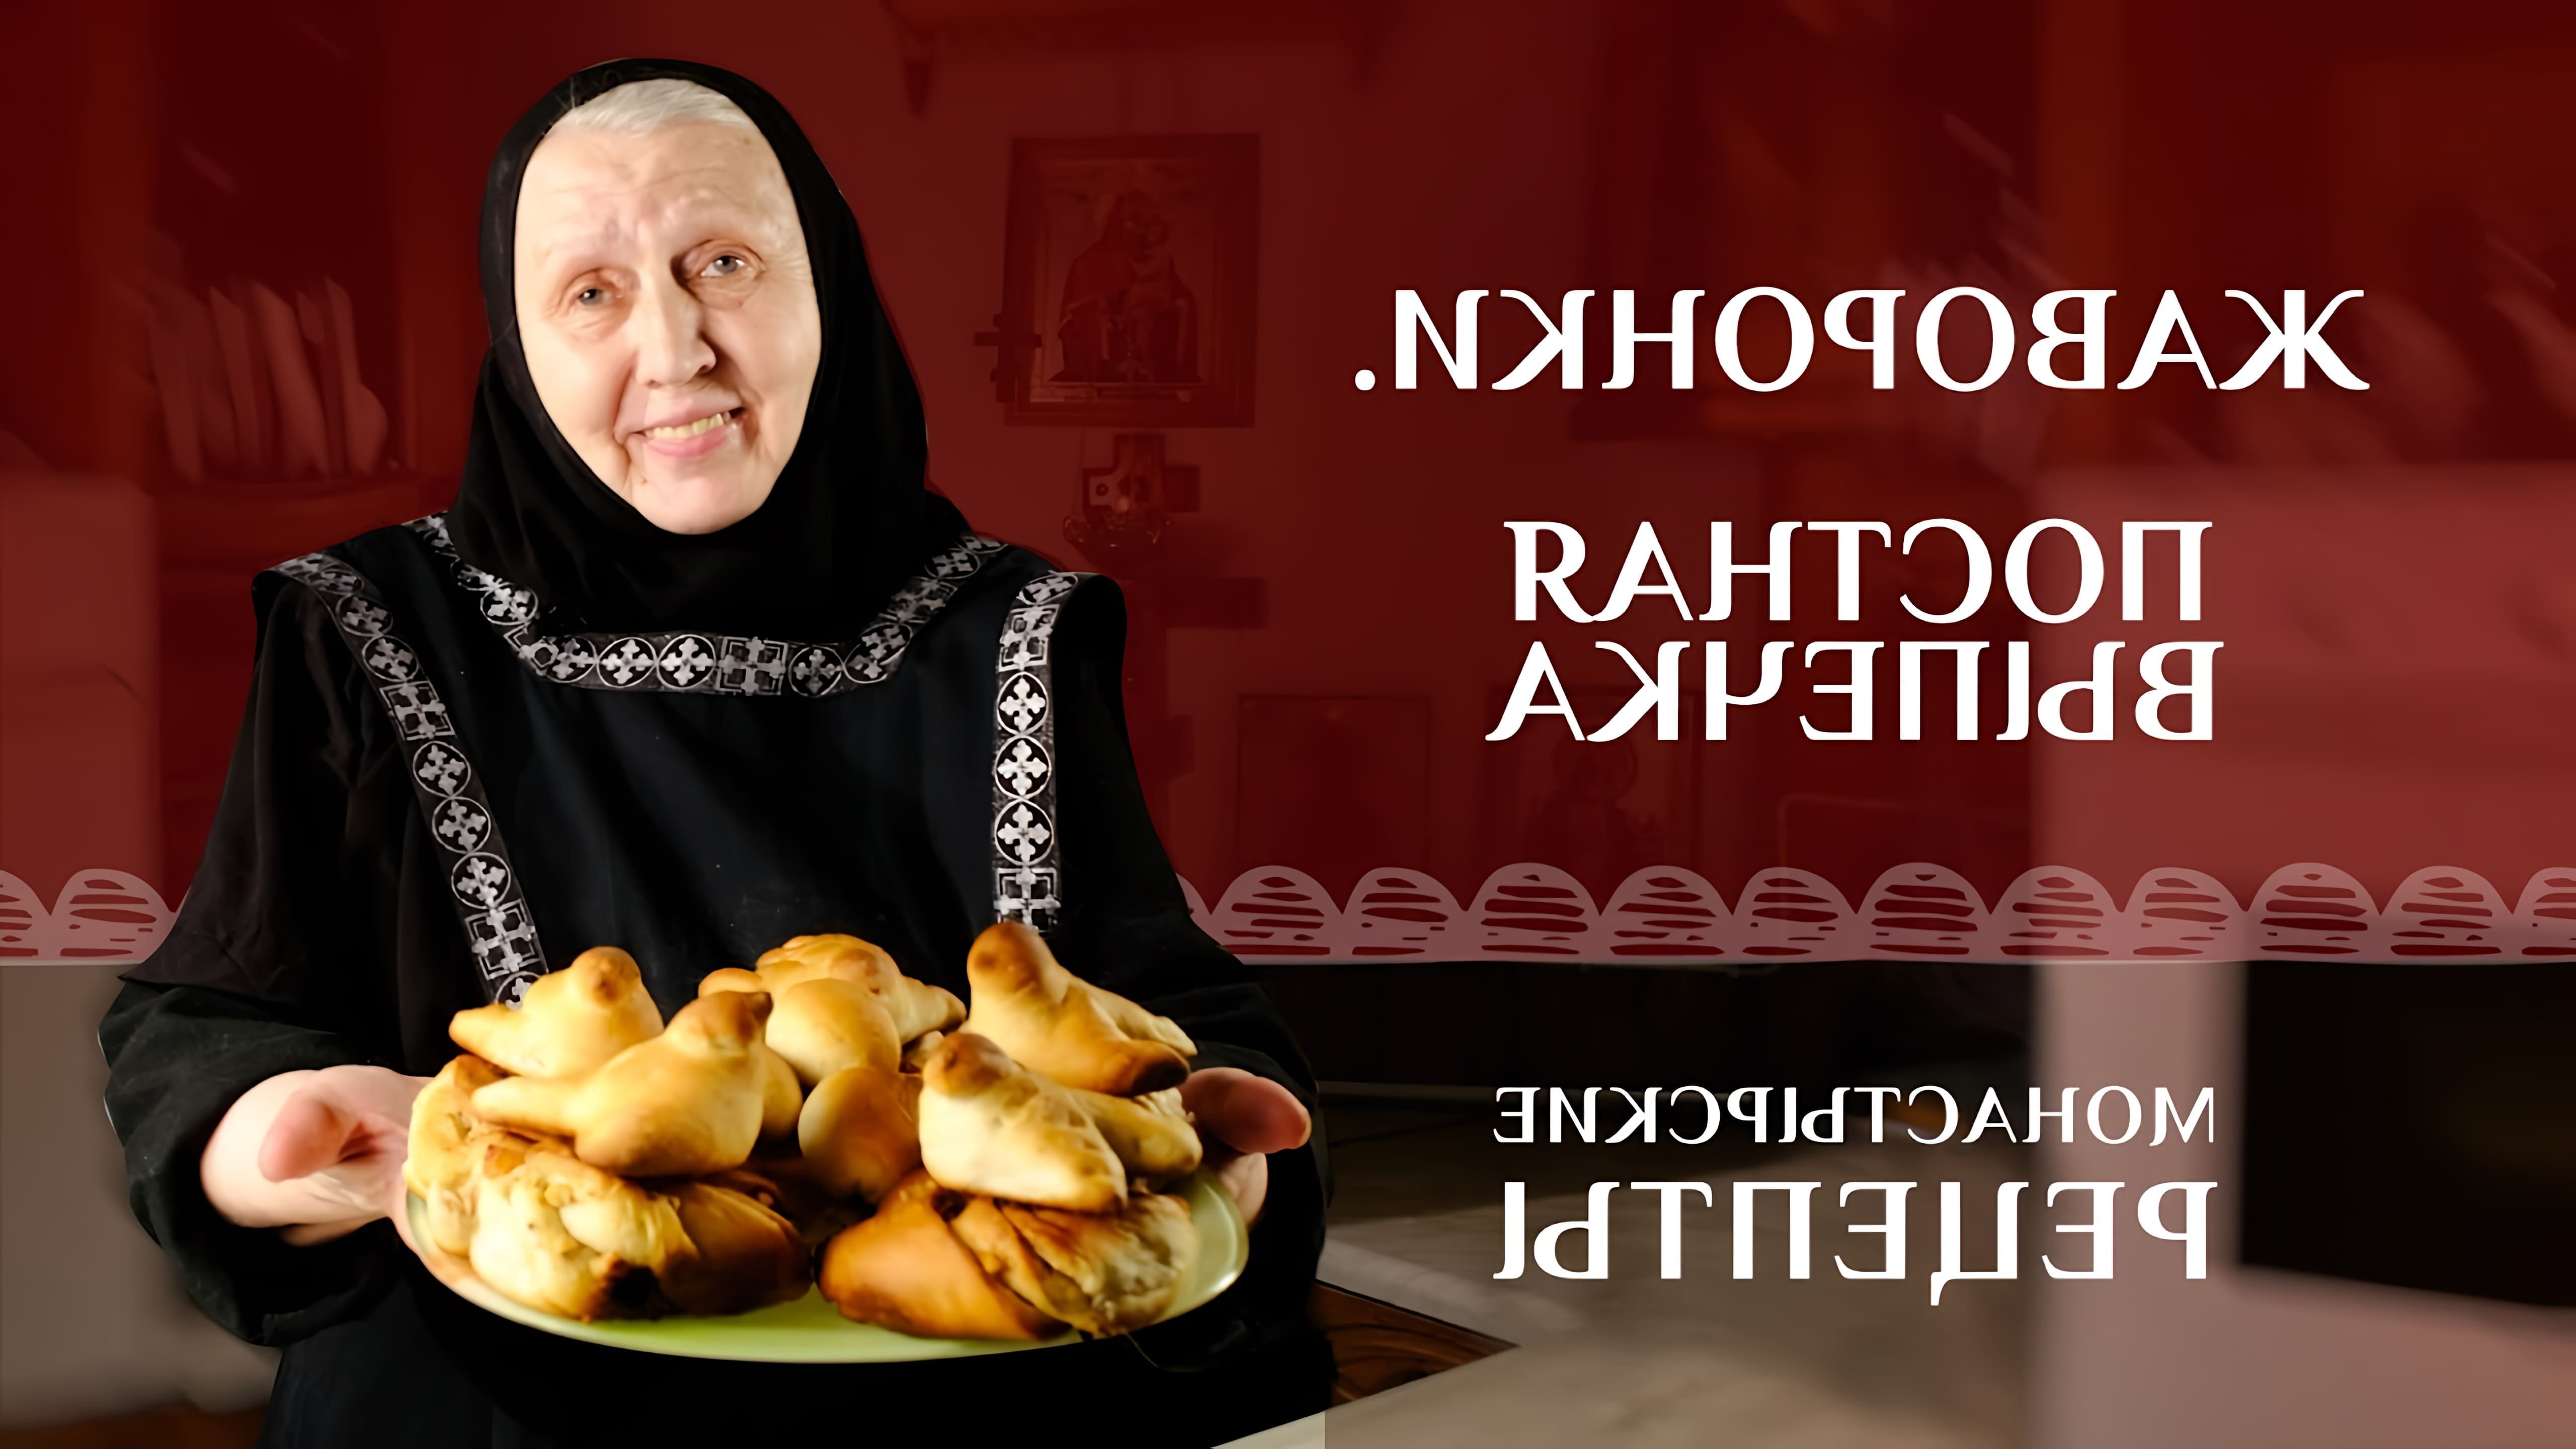 В этом видео рассказывается о выпечке жаворонков, традиционной для православной церкви в день 40 мучеников Севастийских